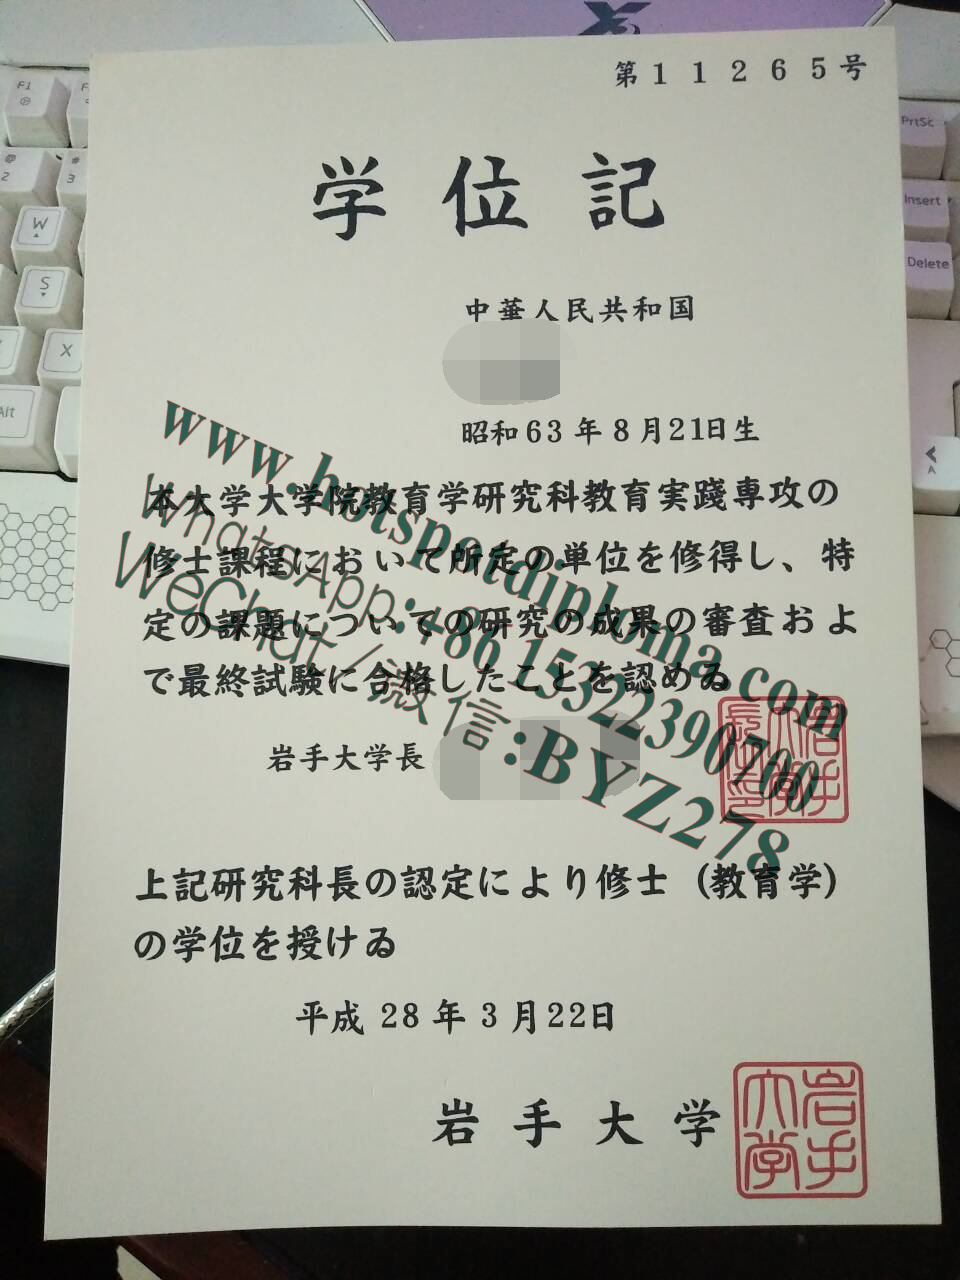 Make fake Iwate University Diploma